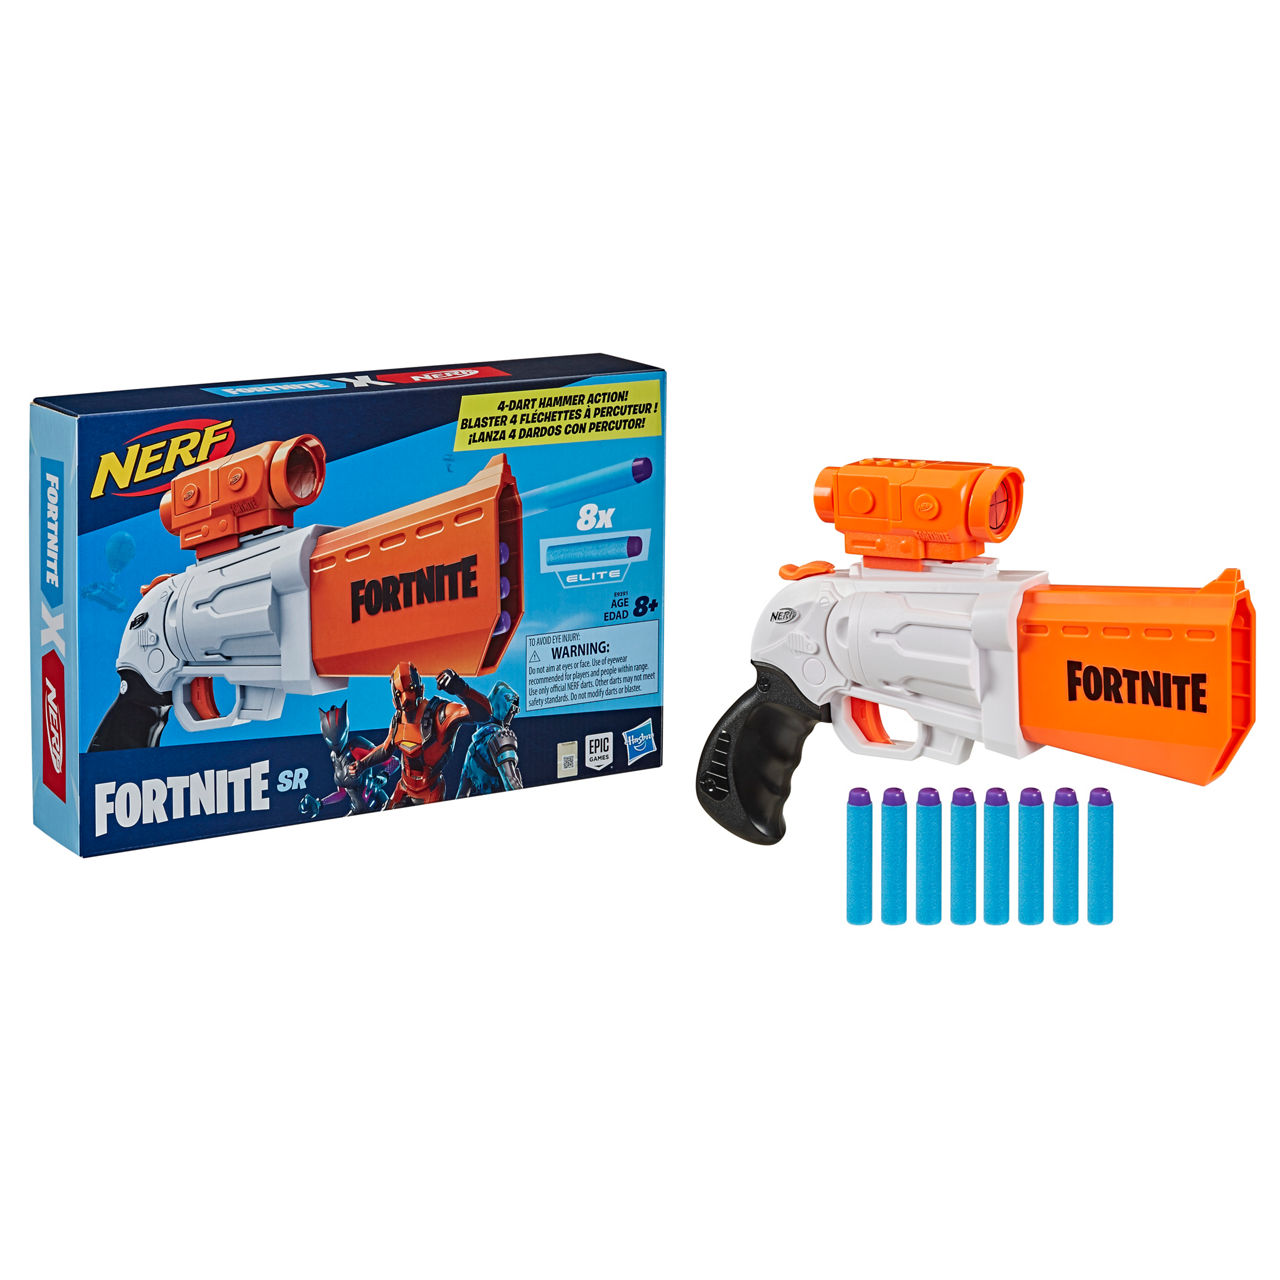 Nerf Fortnite Blaster 